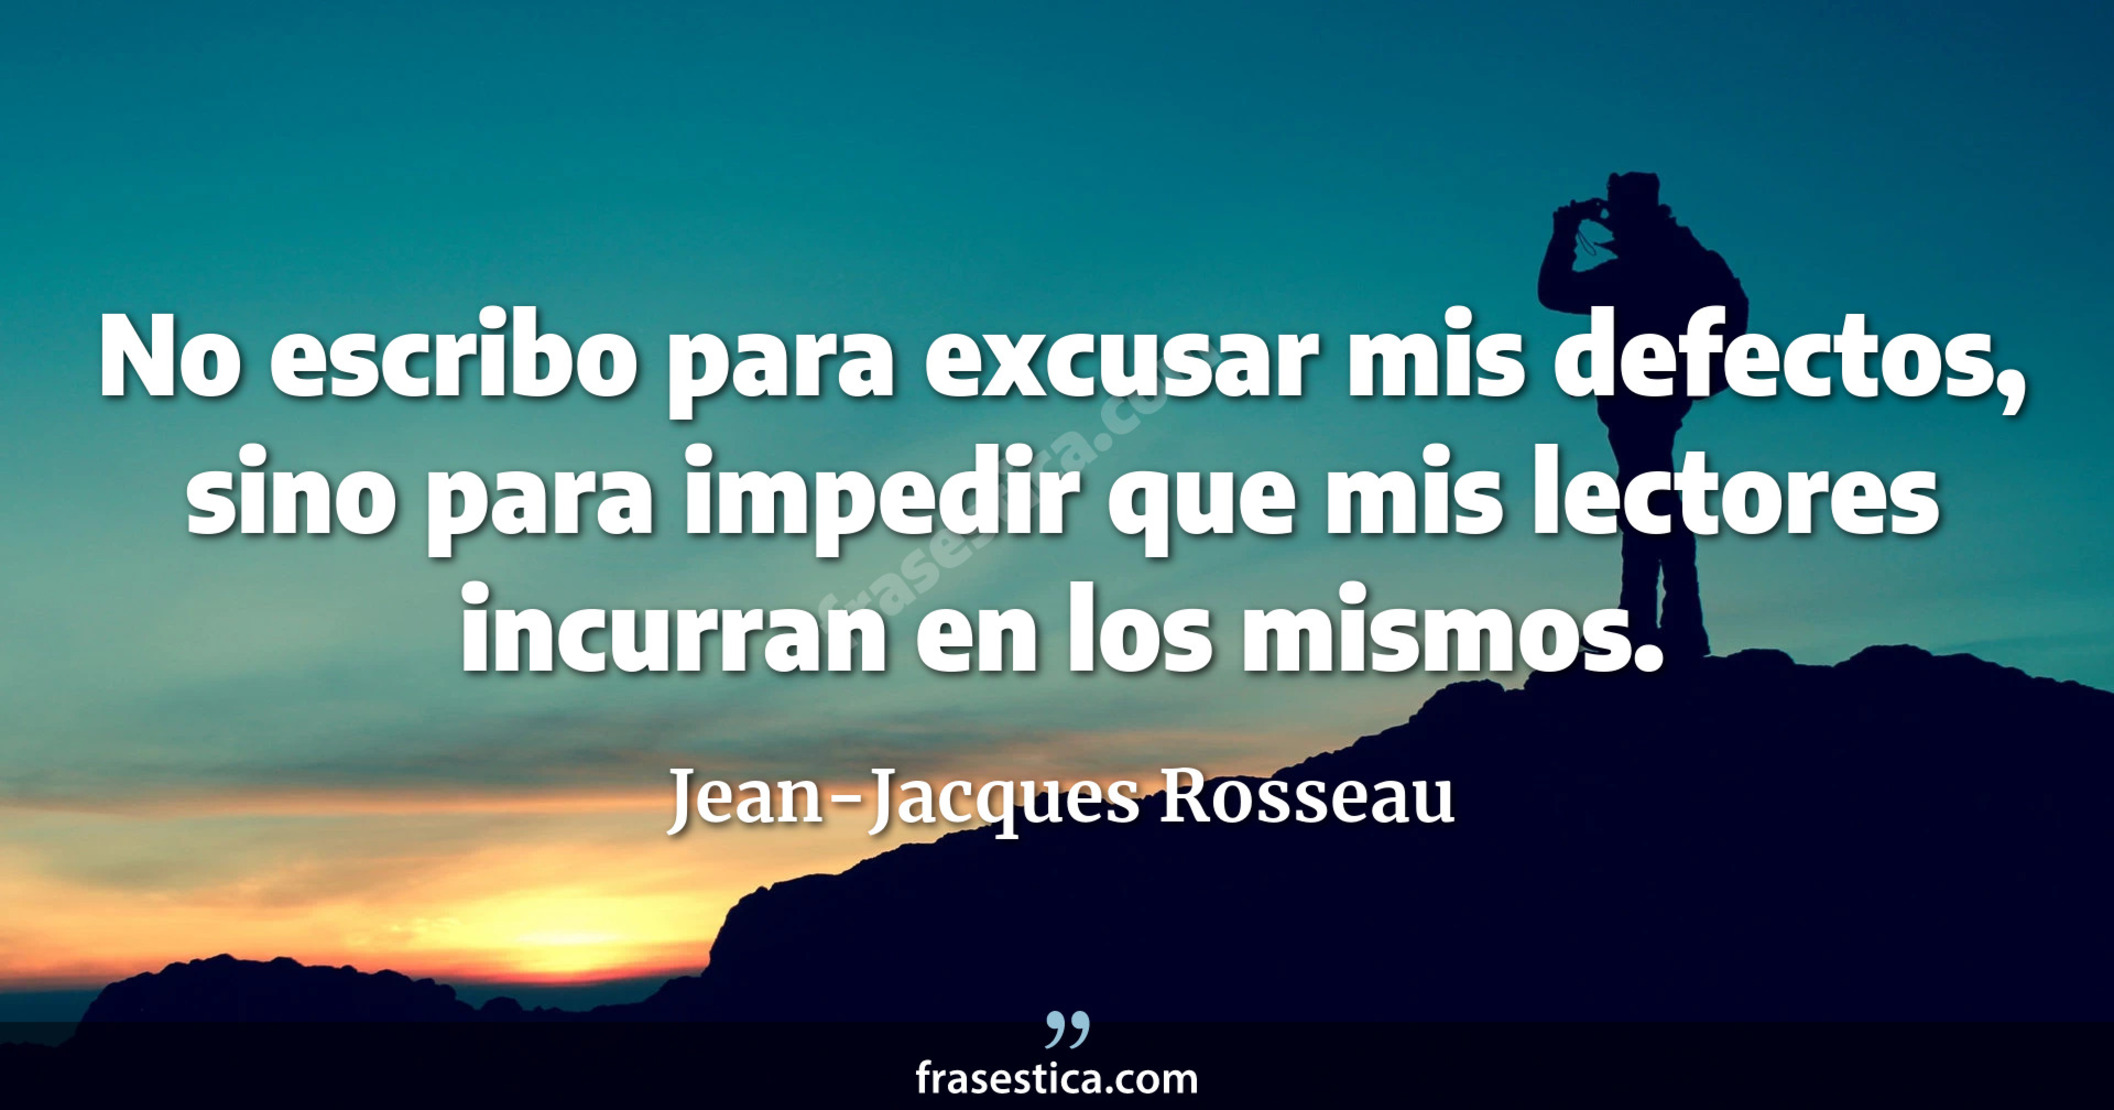 No escribo para excusar mis defectos, sino para impedir que mis lectores incurran en los mismos. - Jean-Jacques Rosseau